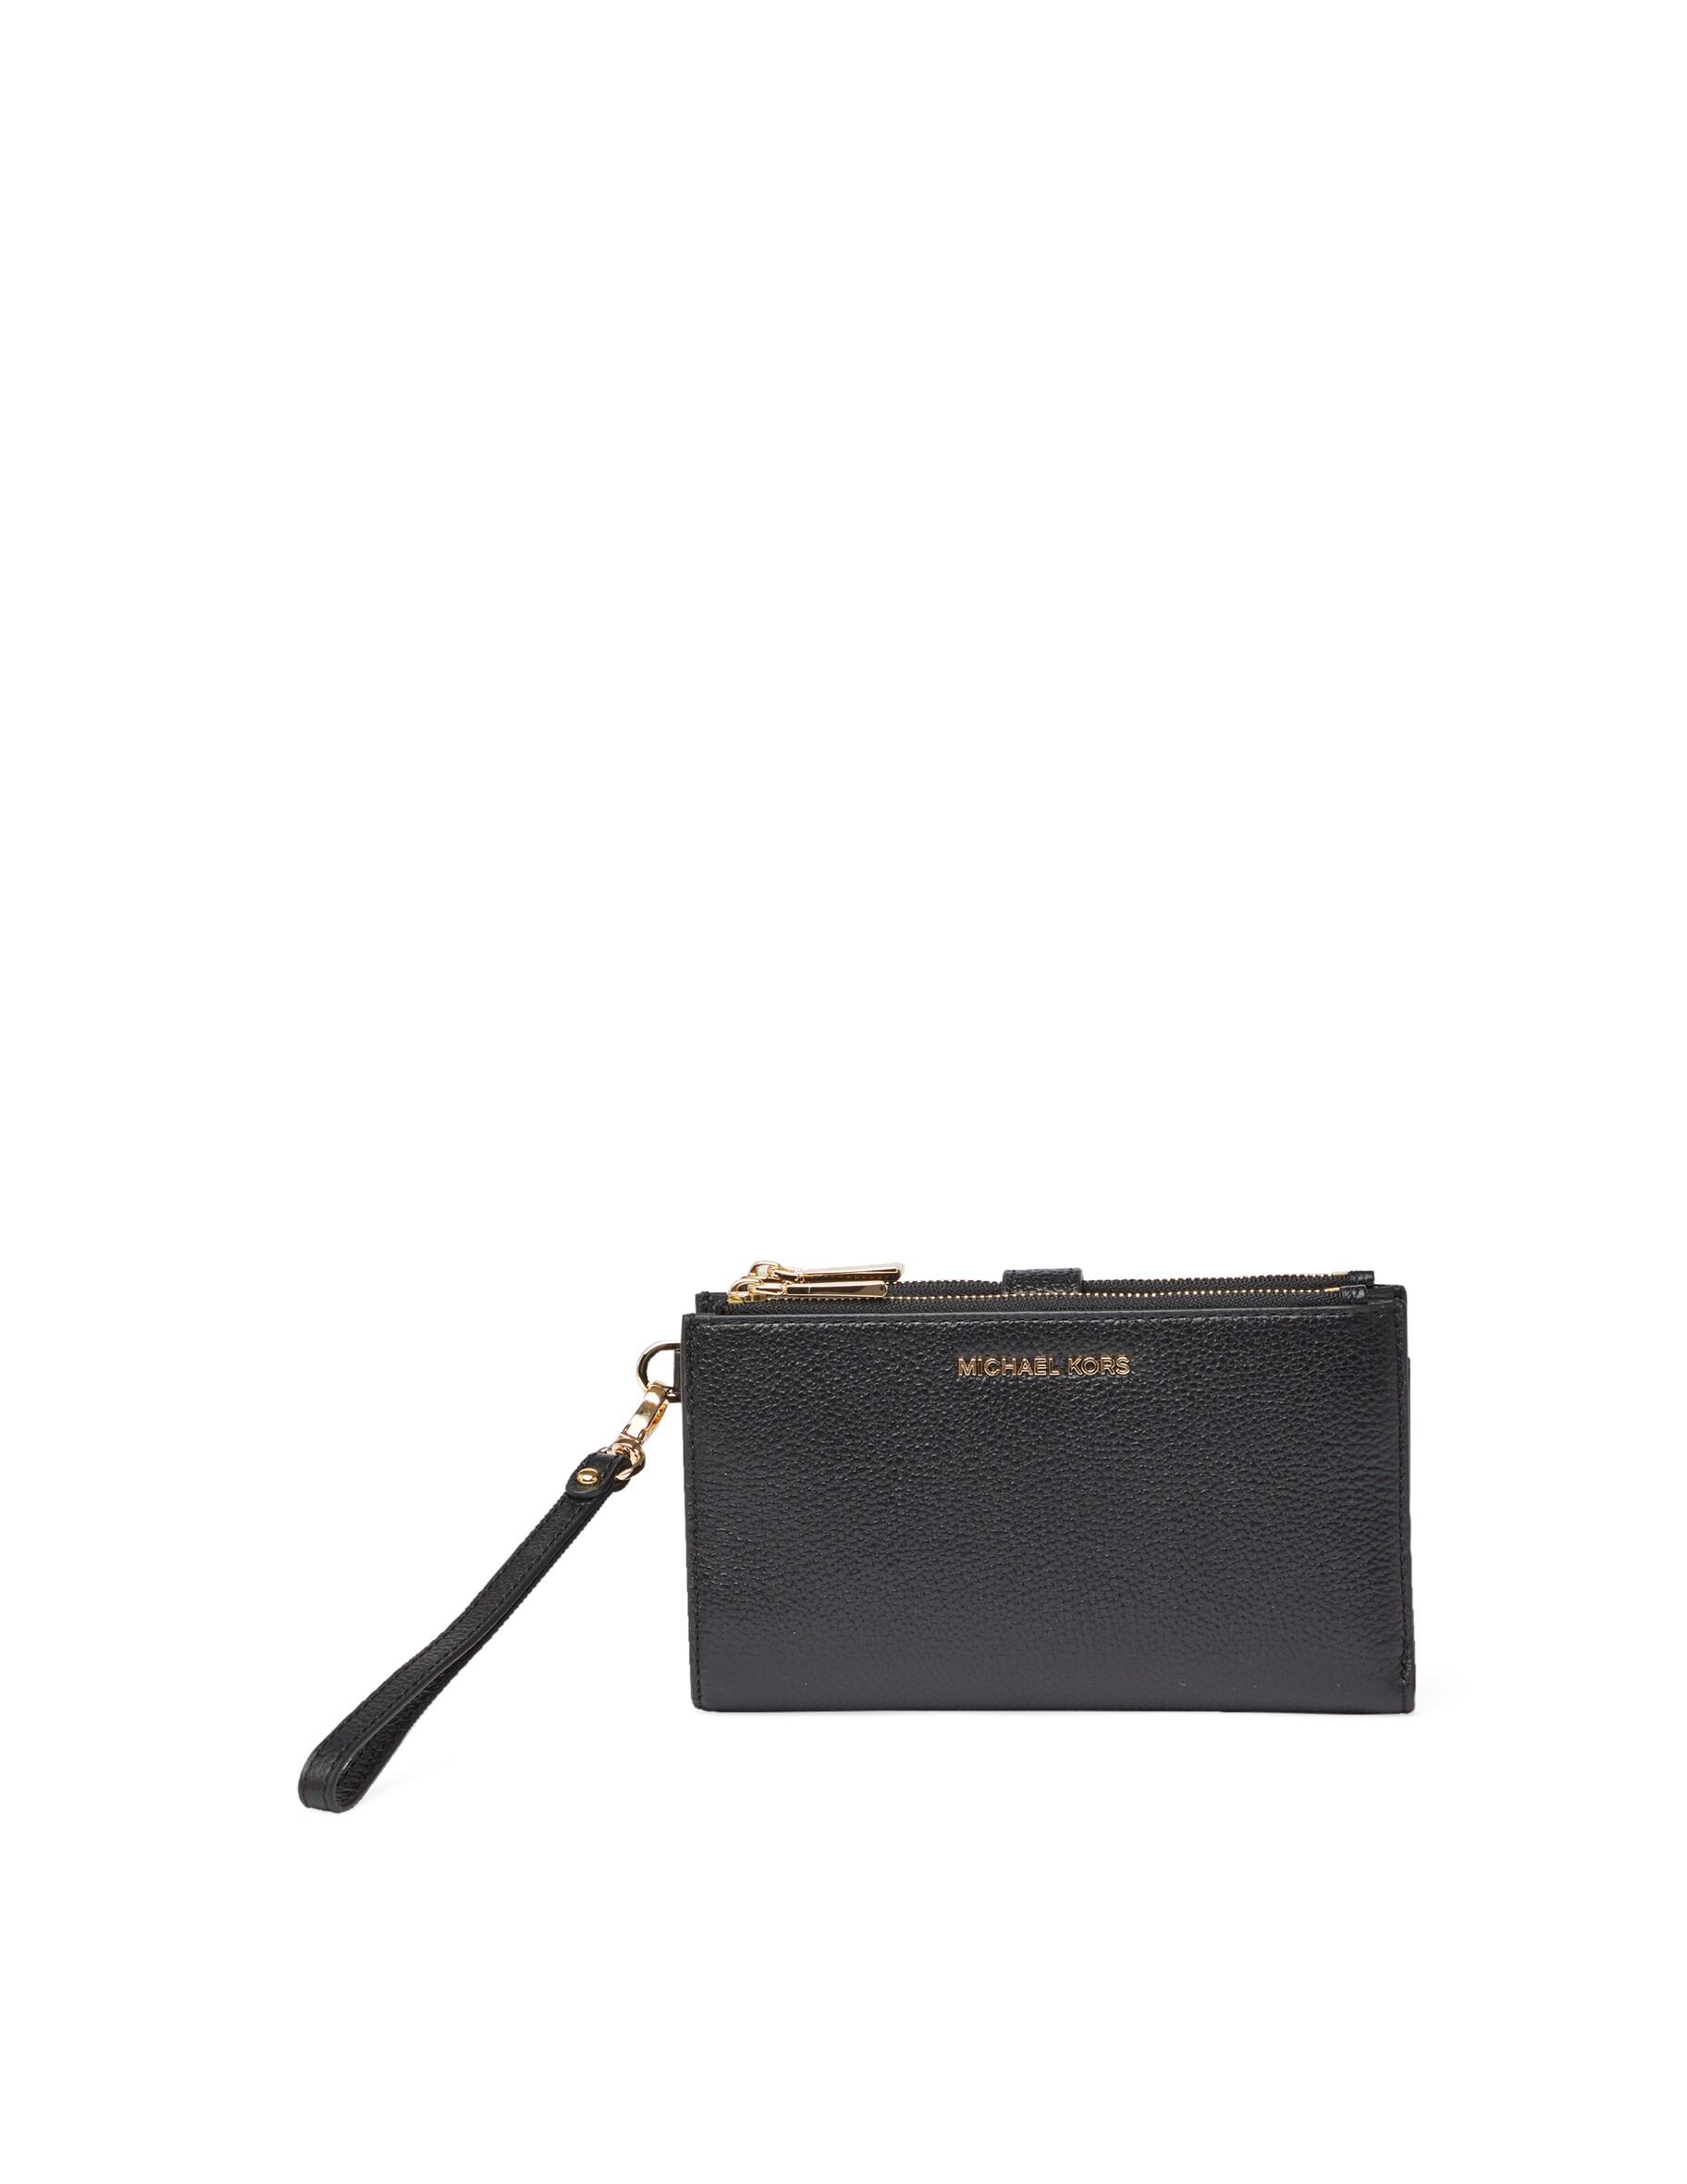 Кожаный кошелек Adele Michael Michael Kors, цвет Black/Gold цена и фото